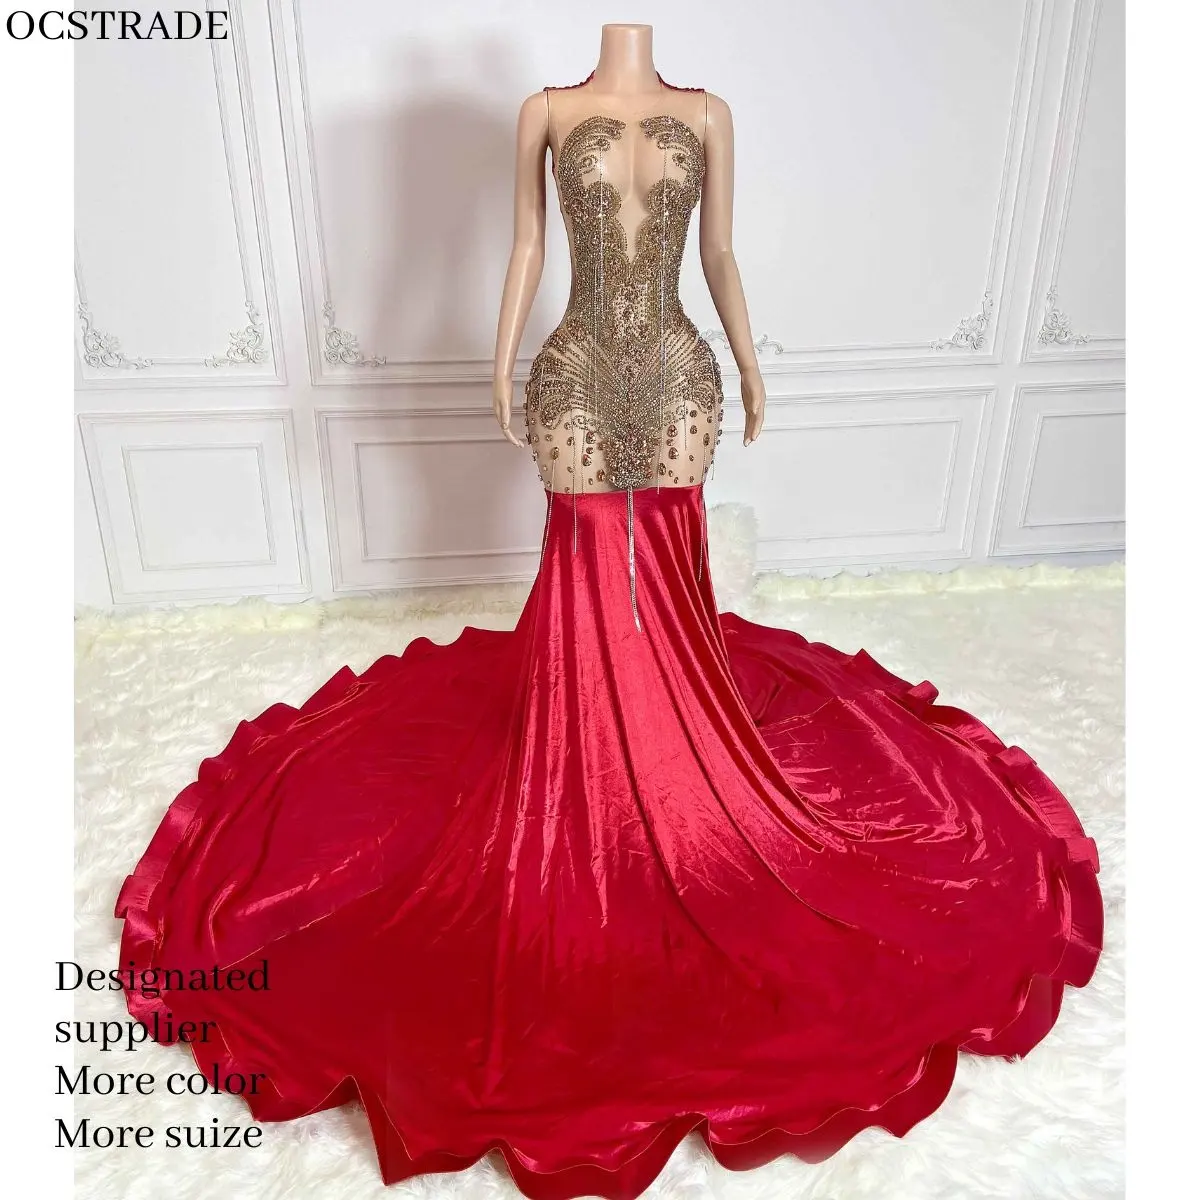 Ocstrade einzigartiges Diamant Perlen Meerjungfrau Bodenlänge langes Abschlussballkleid glitzerndes Strass Hochzeitskleid Luxus-Maxi-Abendkleid